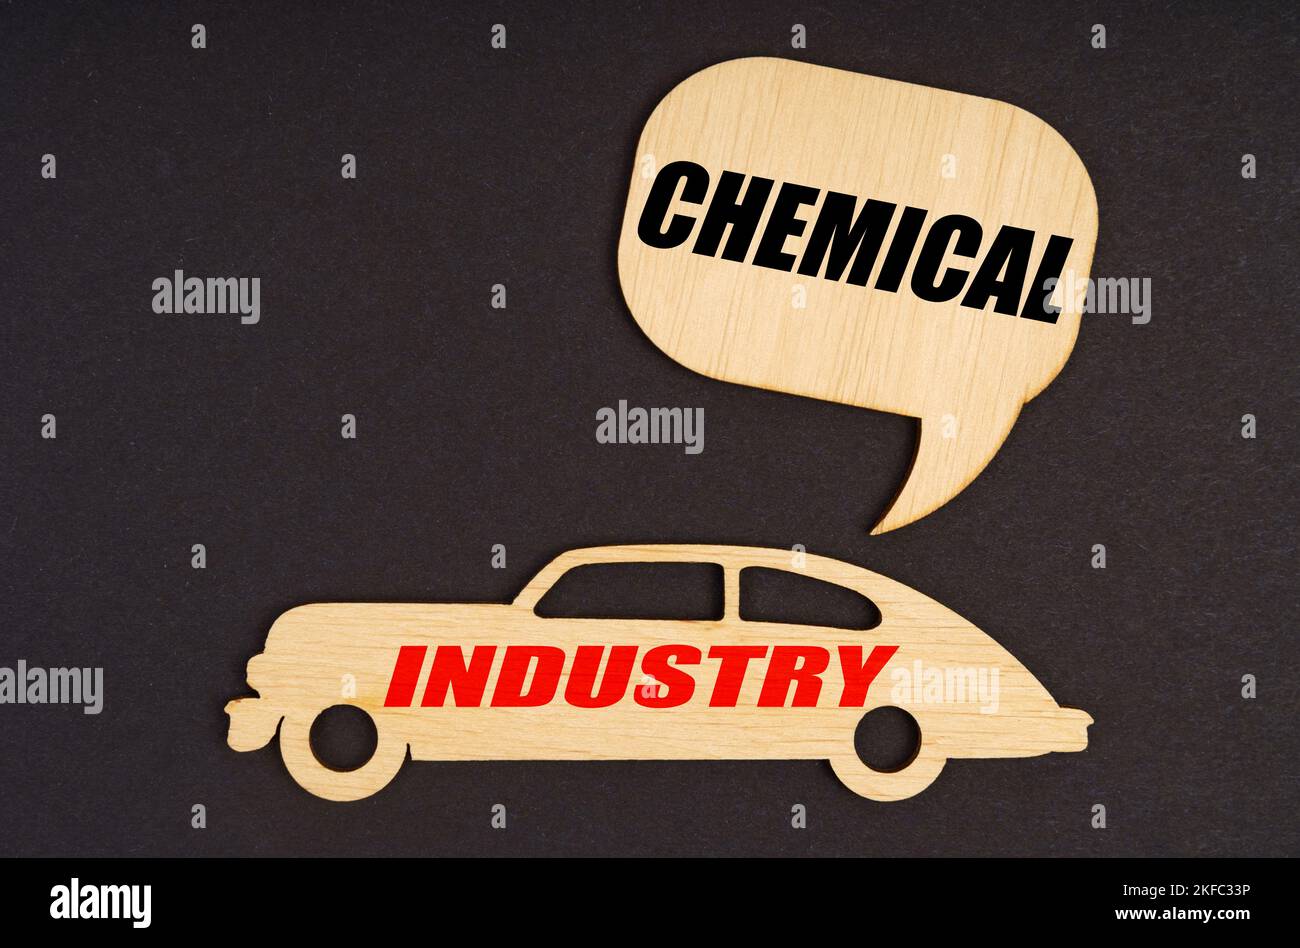 Branchenkonzept. Auf schwarzem Hintergrund ein Auto mit der Aufschrift Industrie, darüber ein Schild mit der Aufschrift - Chemical Stockfoto